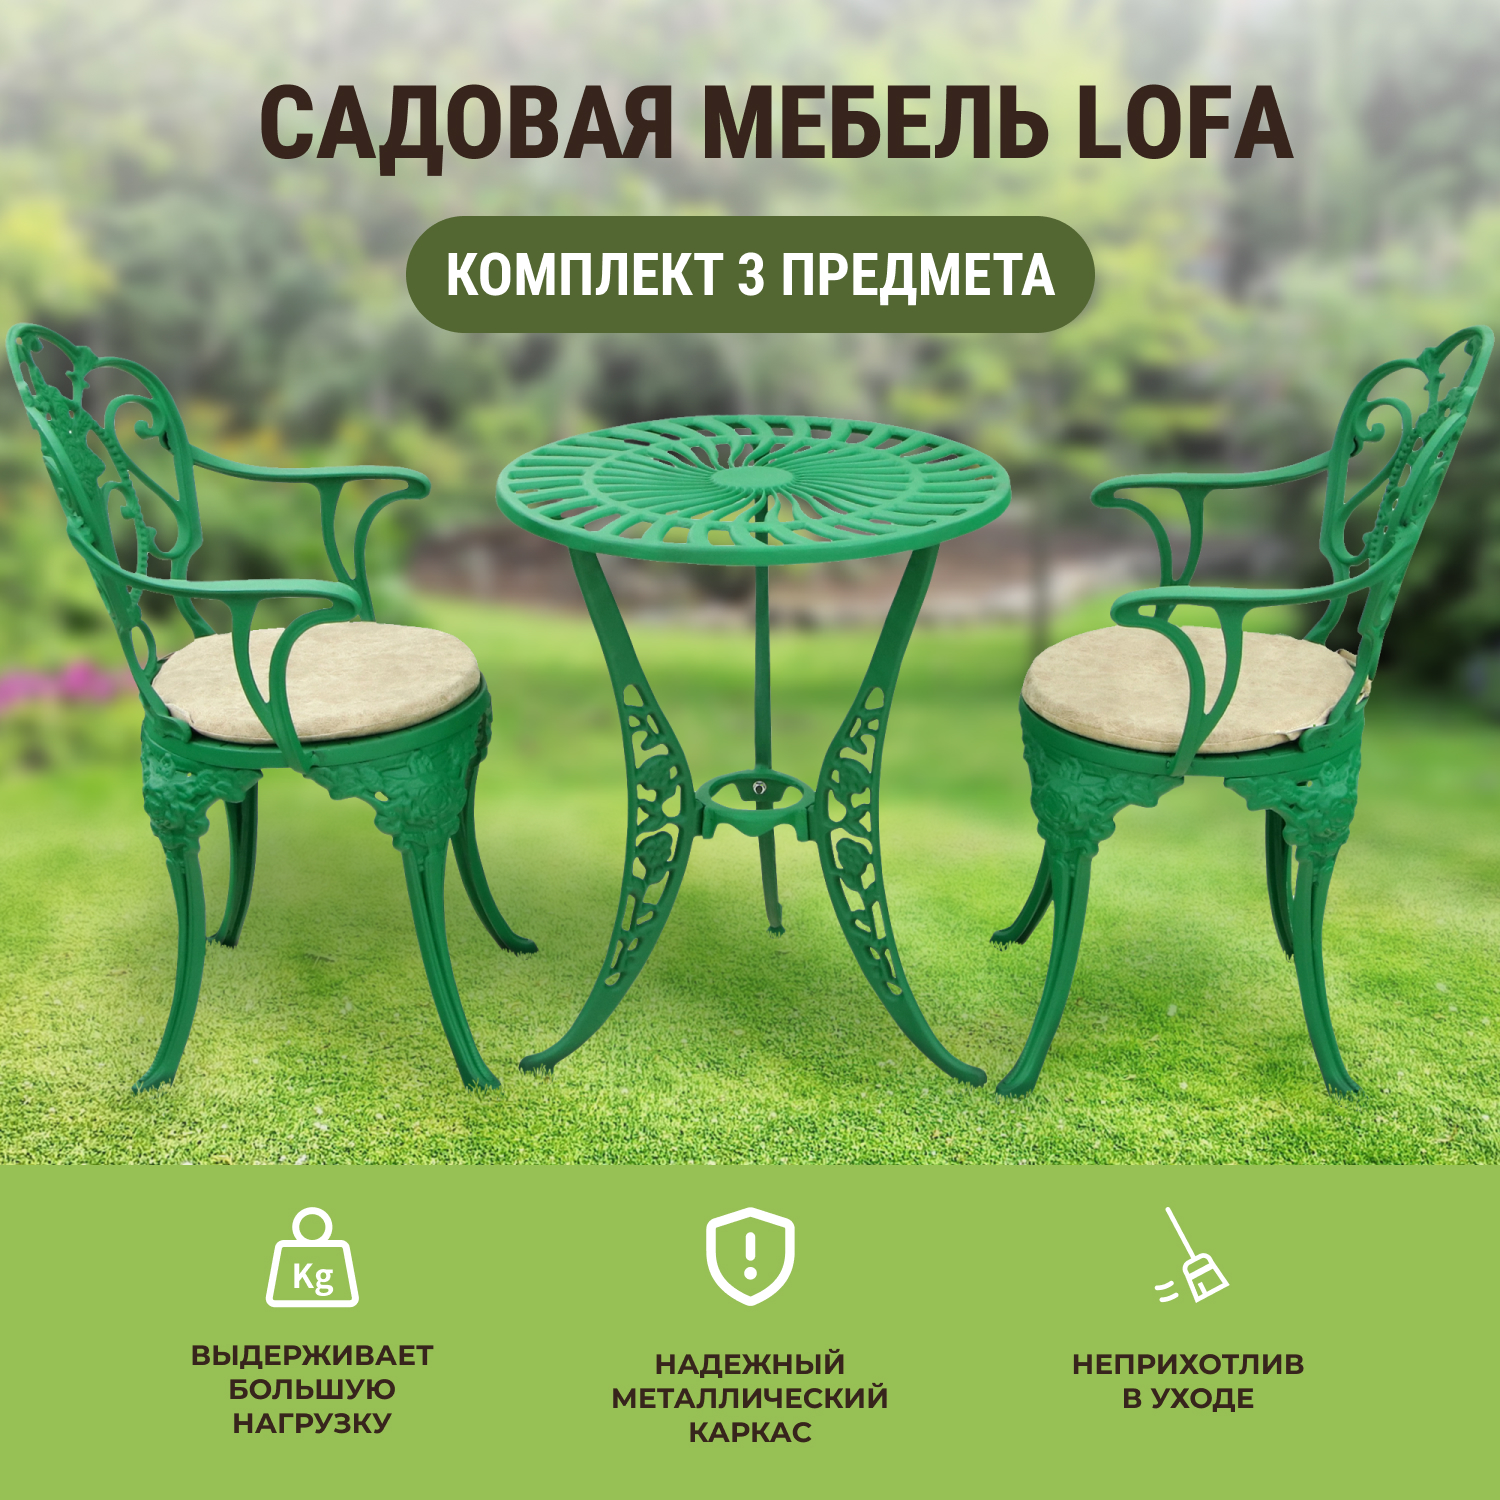 Комплект мебели Lofa 3 предмета, цвет зеленый - фото 2